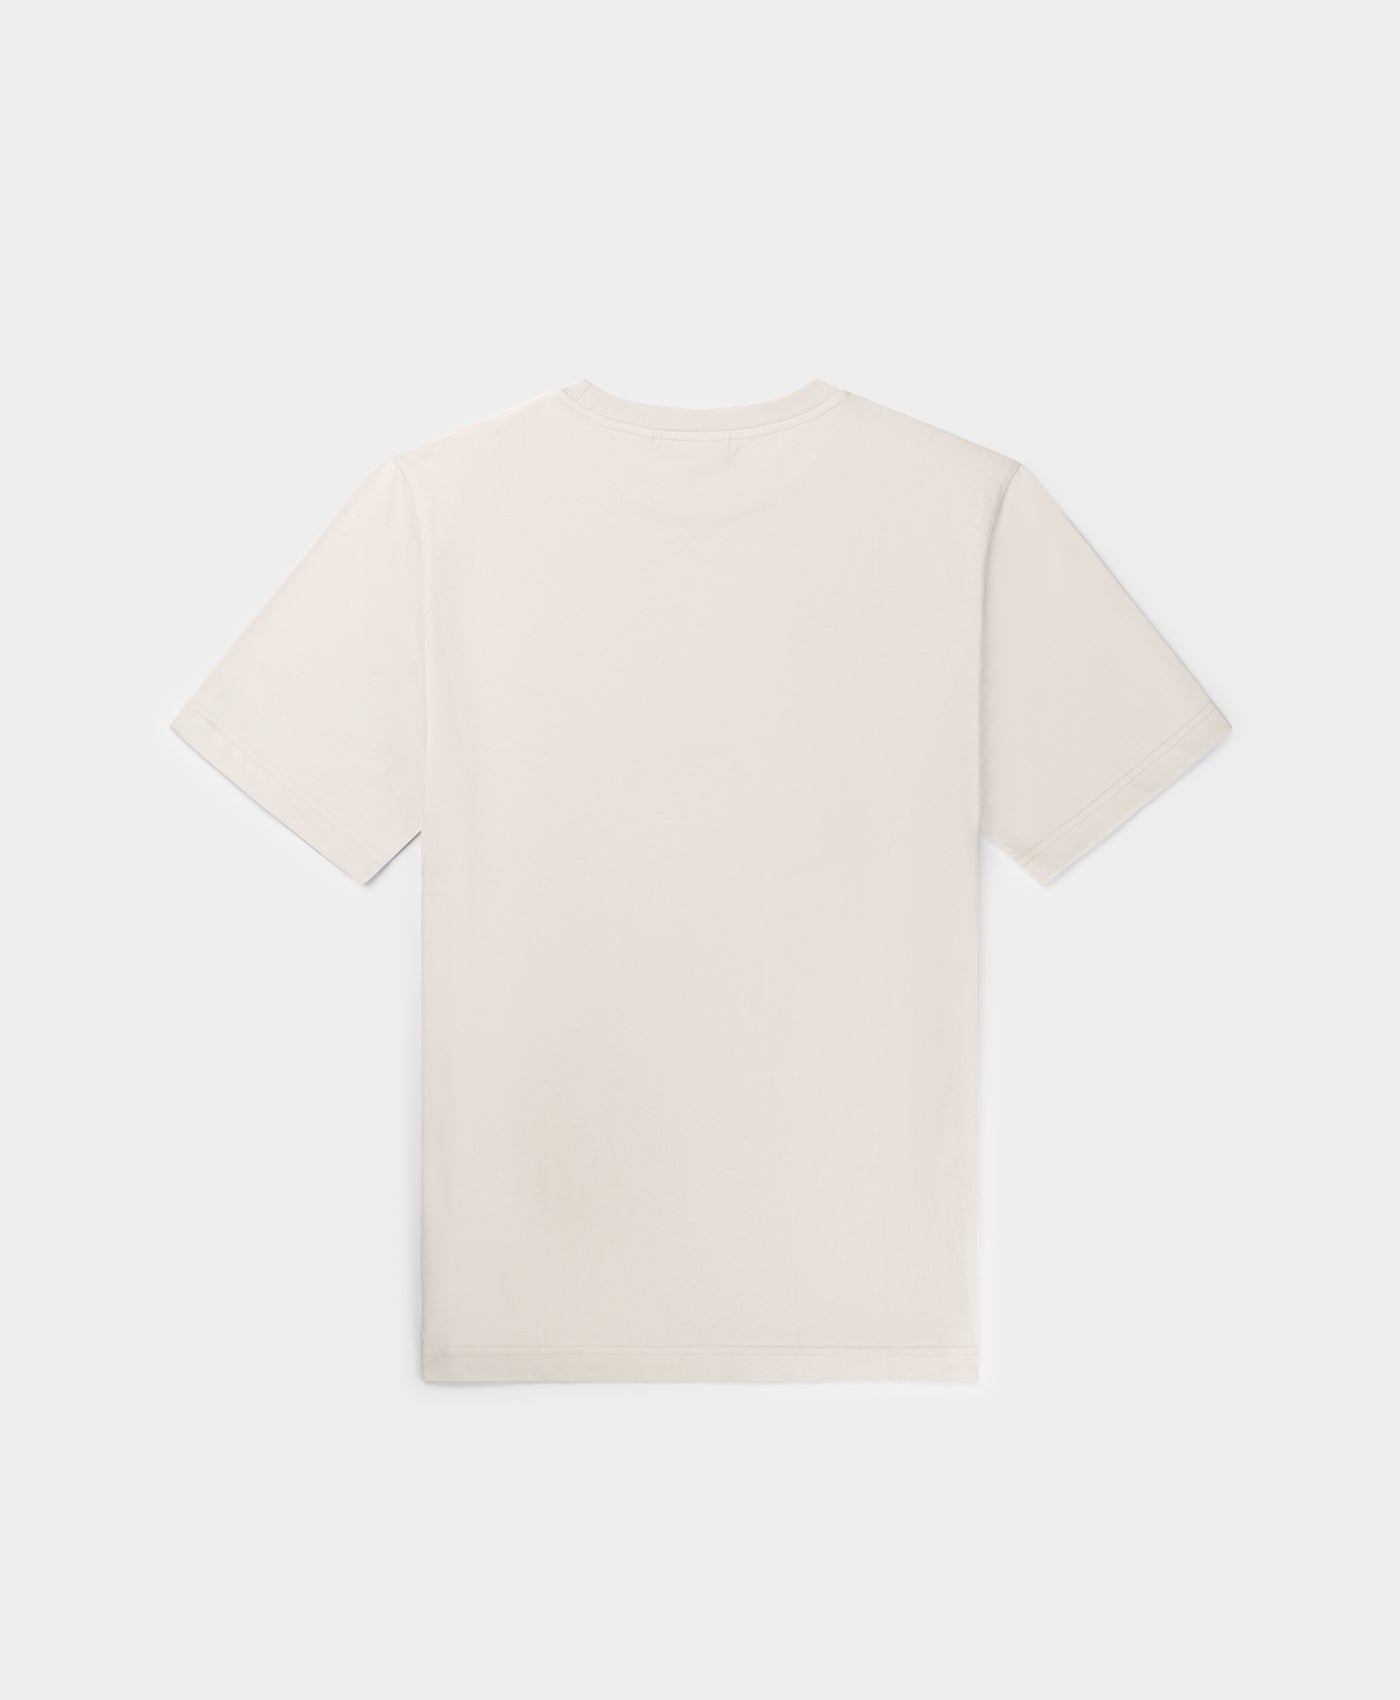 DP - Moonstruck Beige Circle T-Shirt - Packshot - Rear